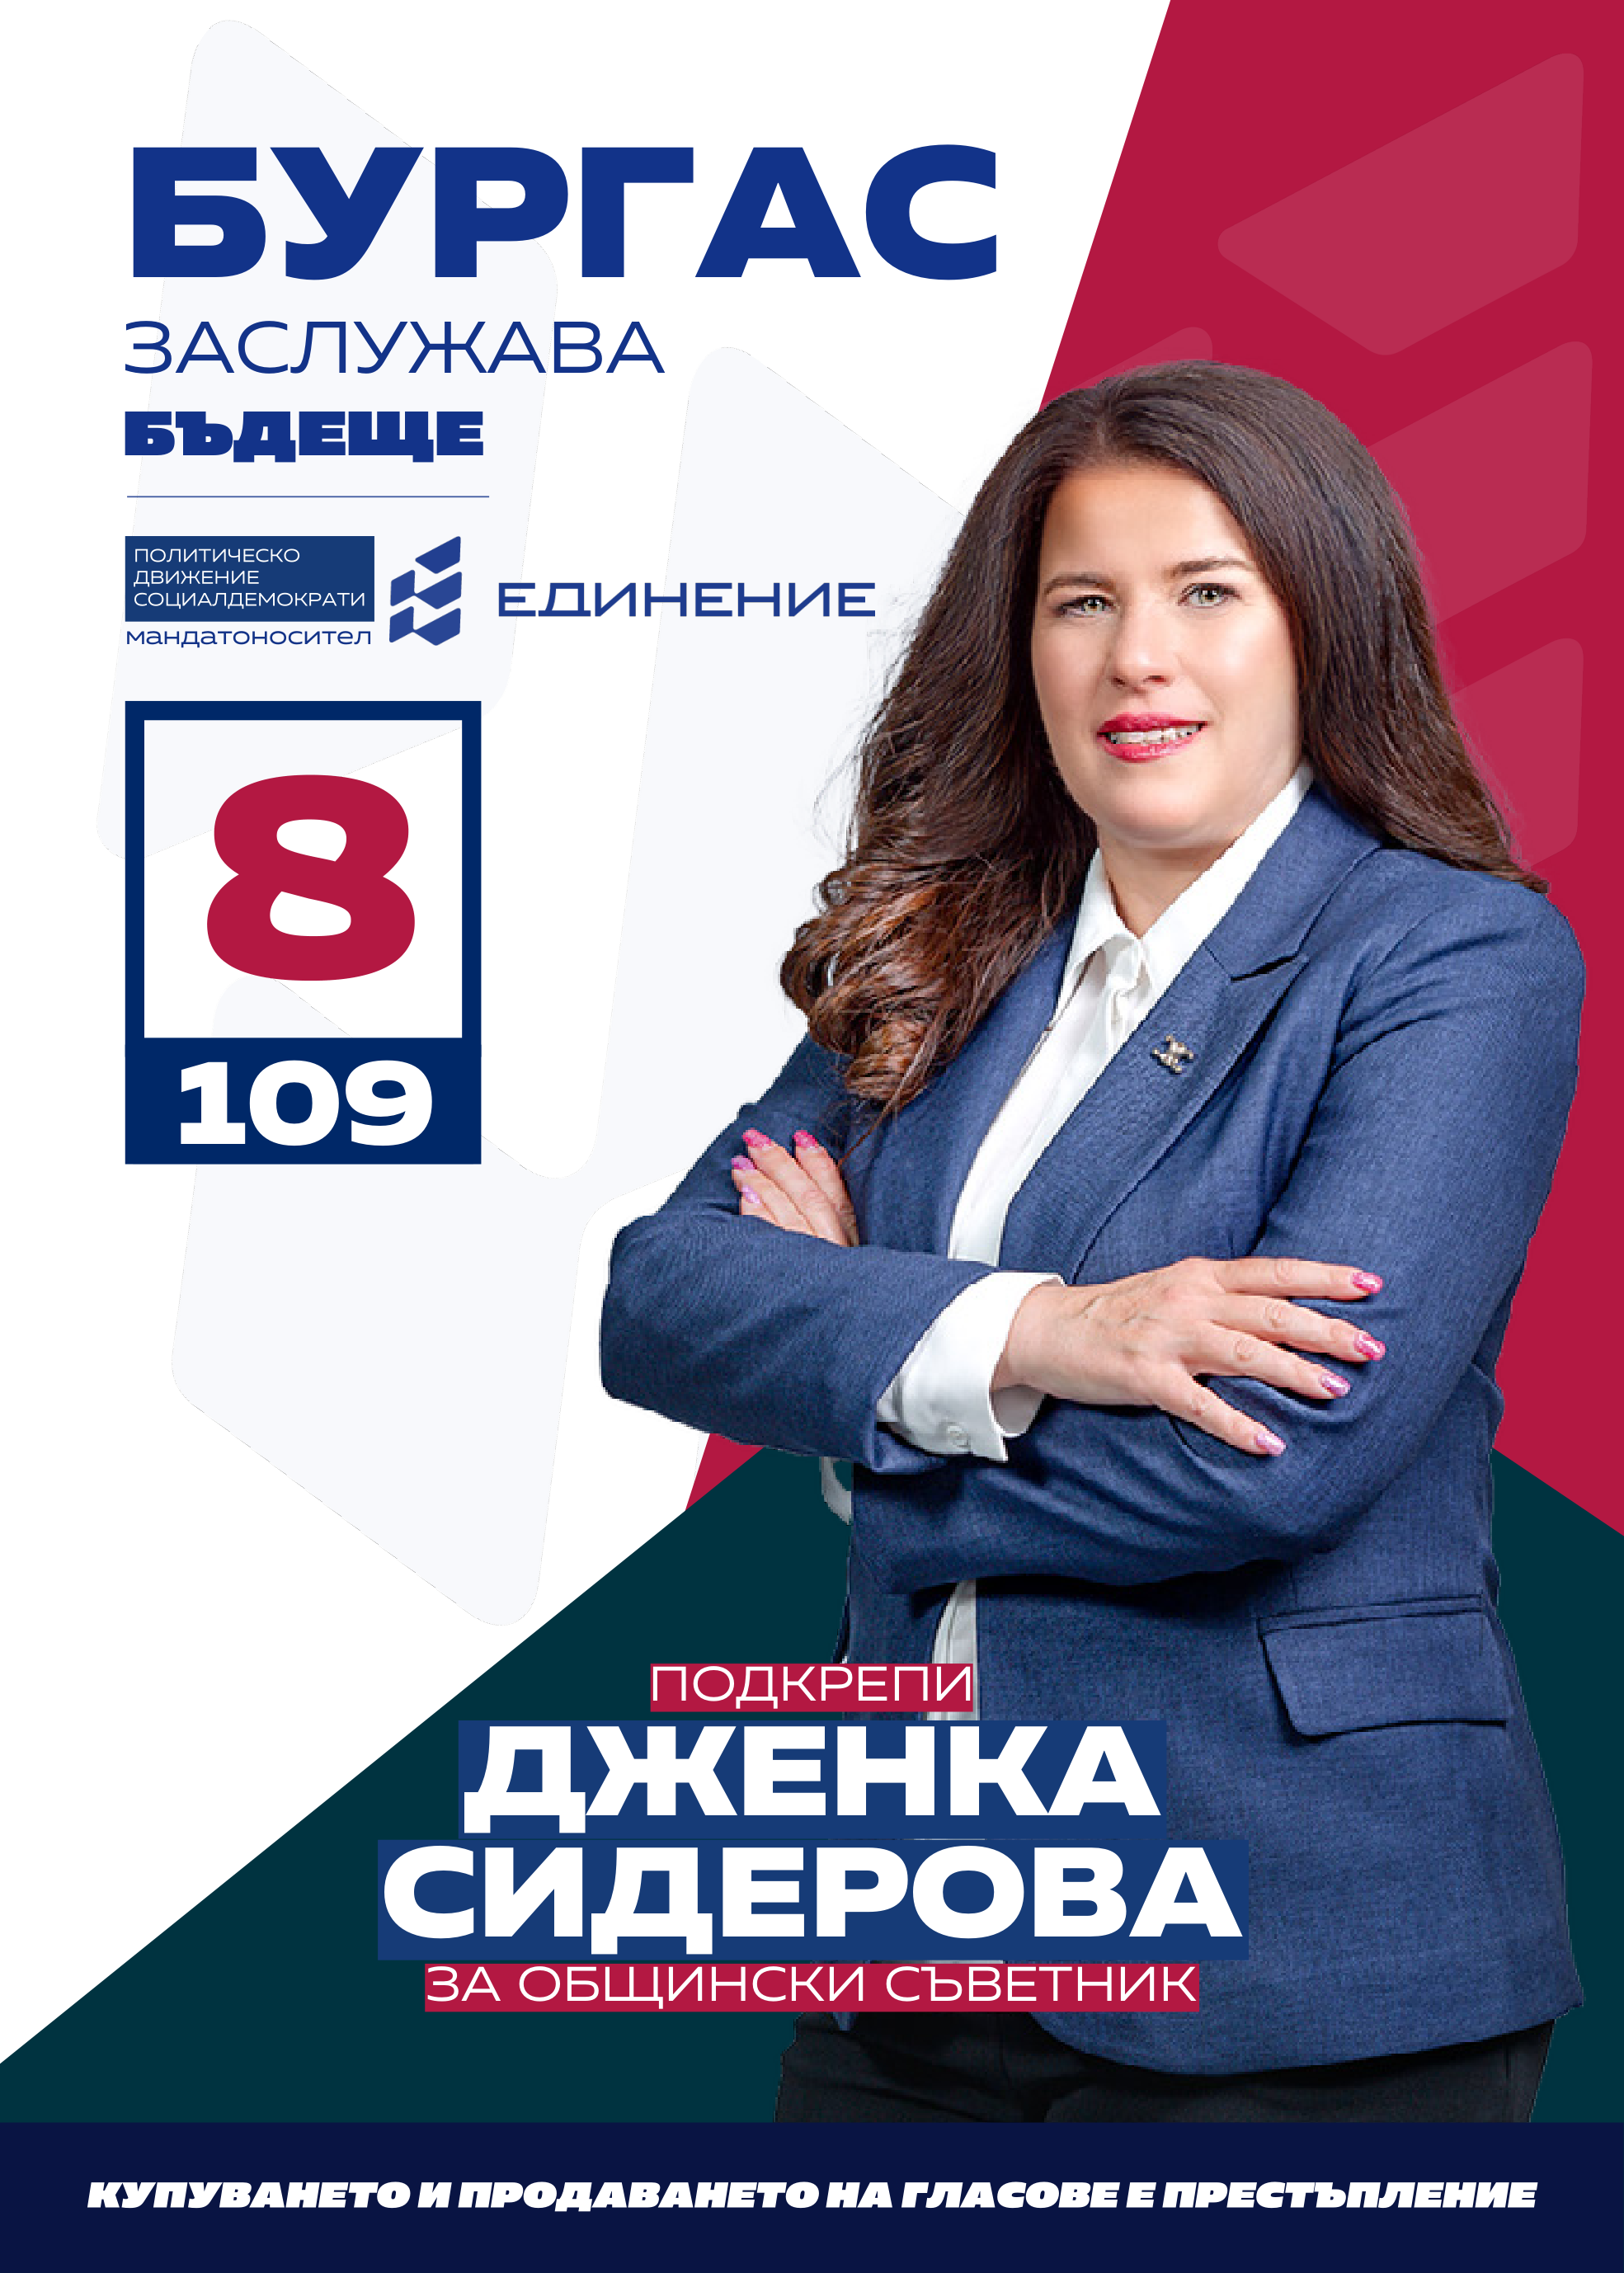 Дженка Сидерова – счетоводител
Кандидатът за общински съветник от ПП Единение